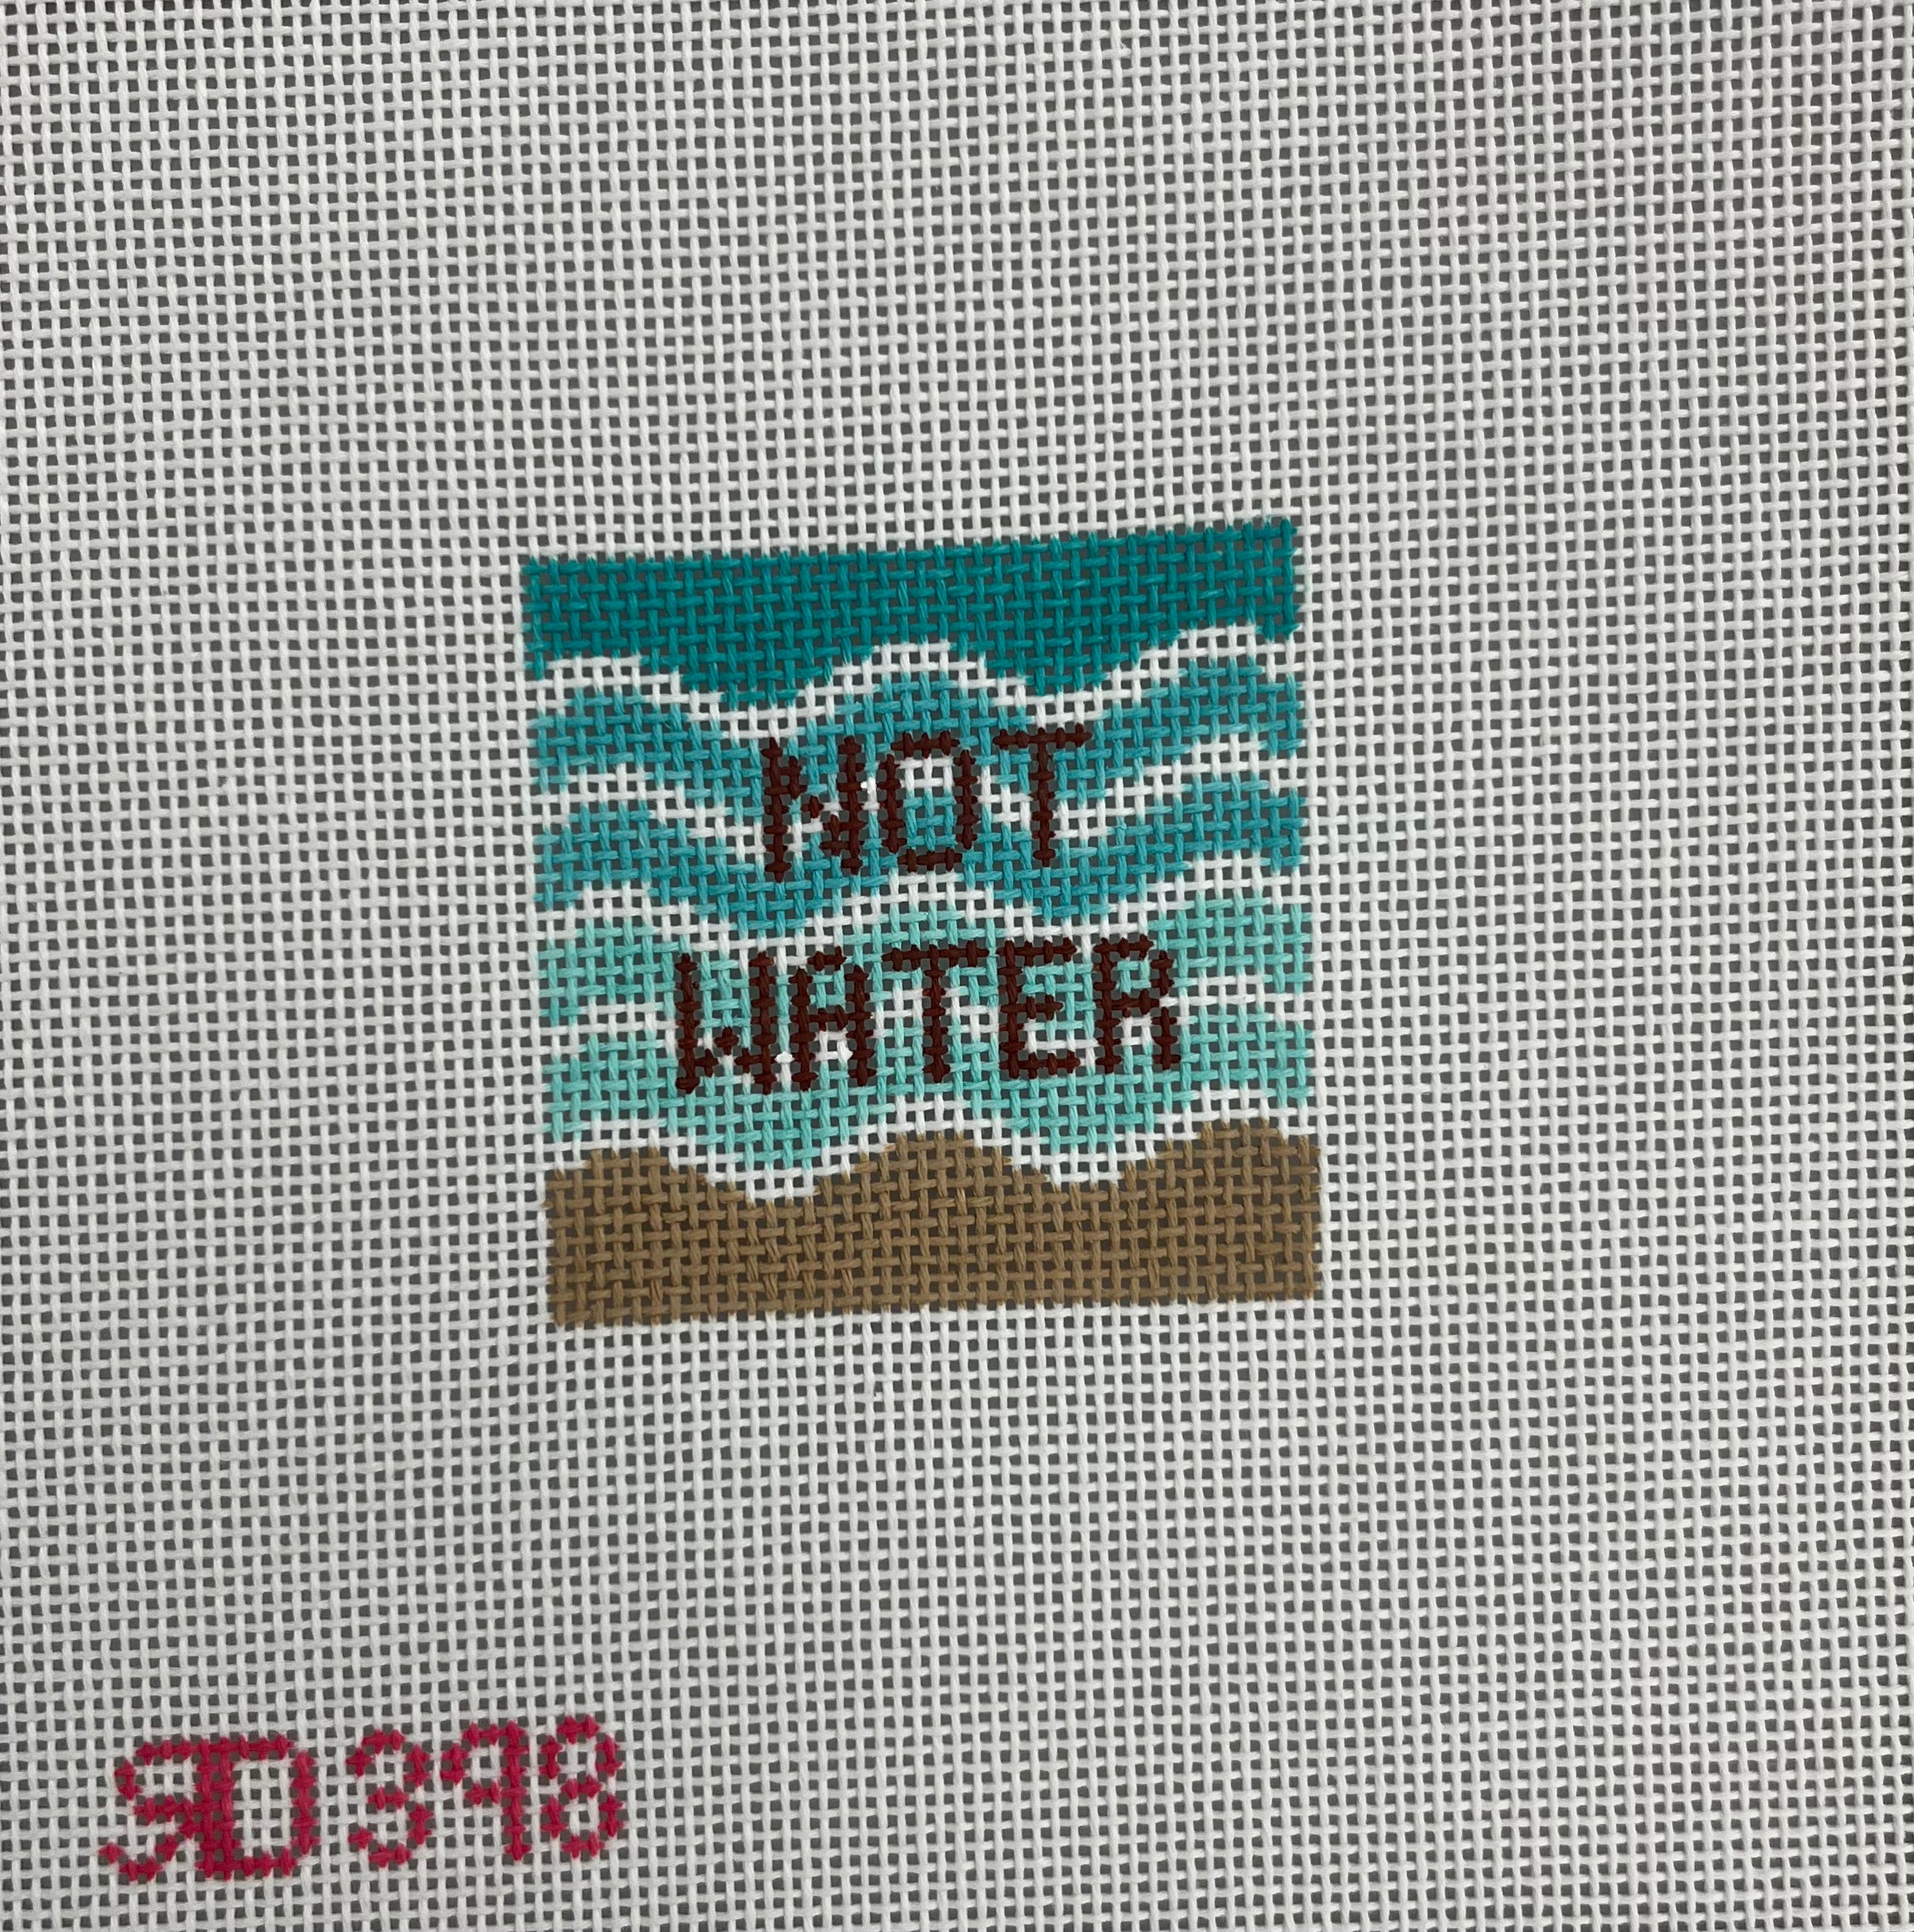 RD 398 - Not Water Insert